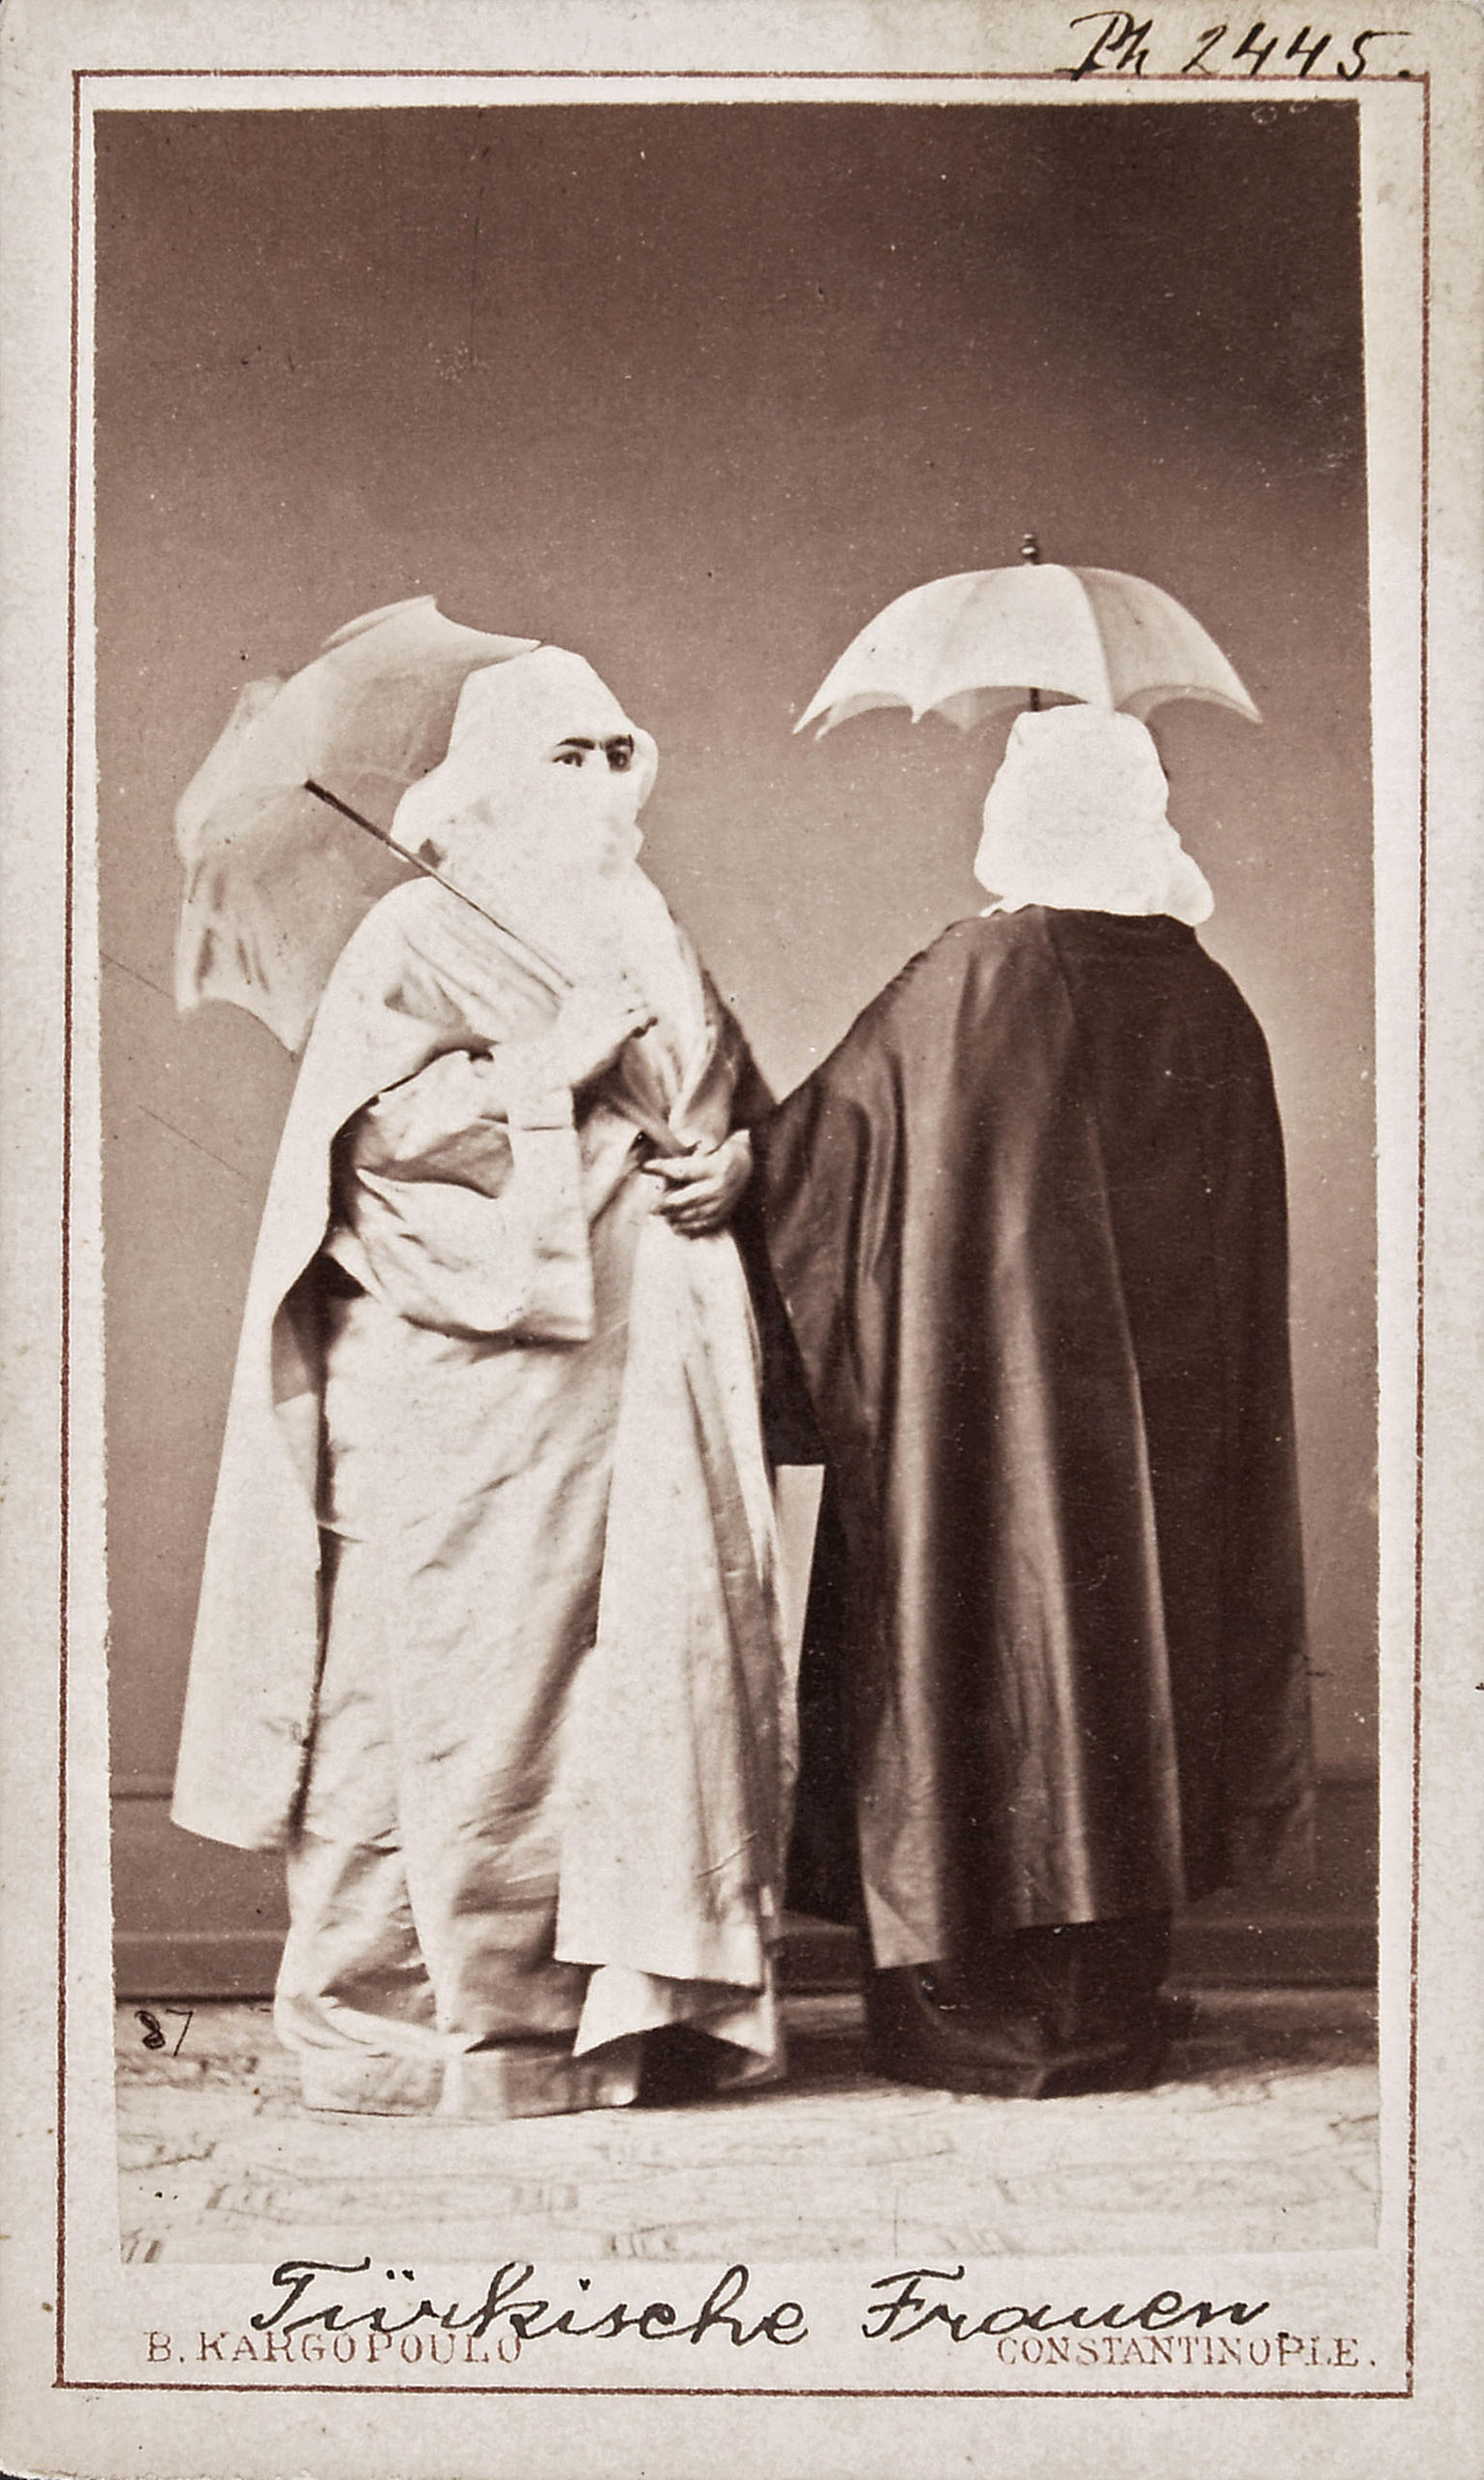 Türkische Frauen, Turkish women, Basile Kargopoulo, Istanbul, around 1870.